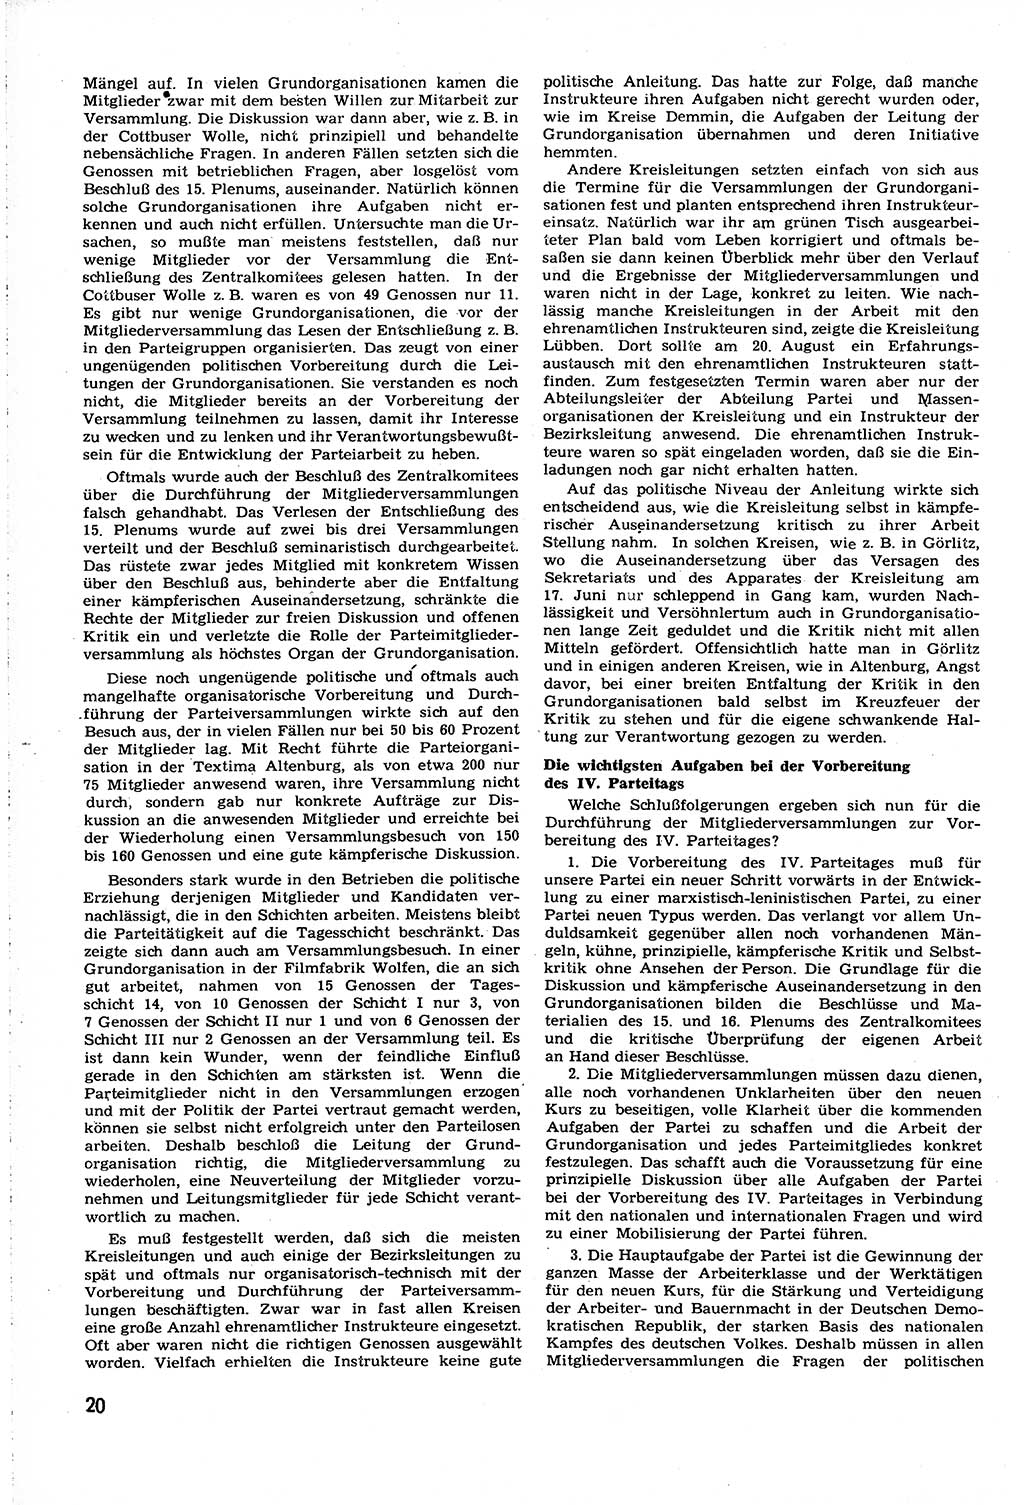 Neuer Weg (NW), Organ des Zentralkomitees (ZK) [Sozialistische Einheitspartei Deutschlands (SED)] für alle Parteiarbeiter, 8. Jahrgang [Deutsche Demokratische Republik (DDR)] 1953, Heft 18/20 (NW ZK SED DDR 1953, H. 18/20)